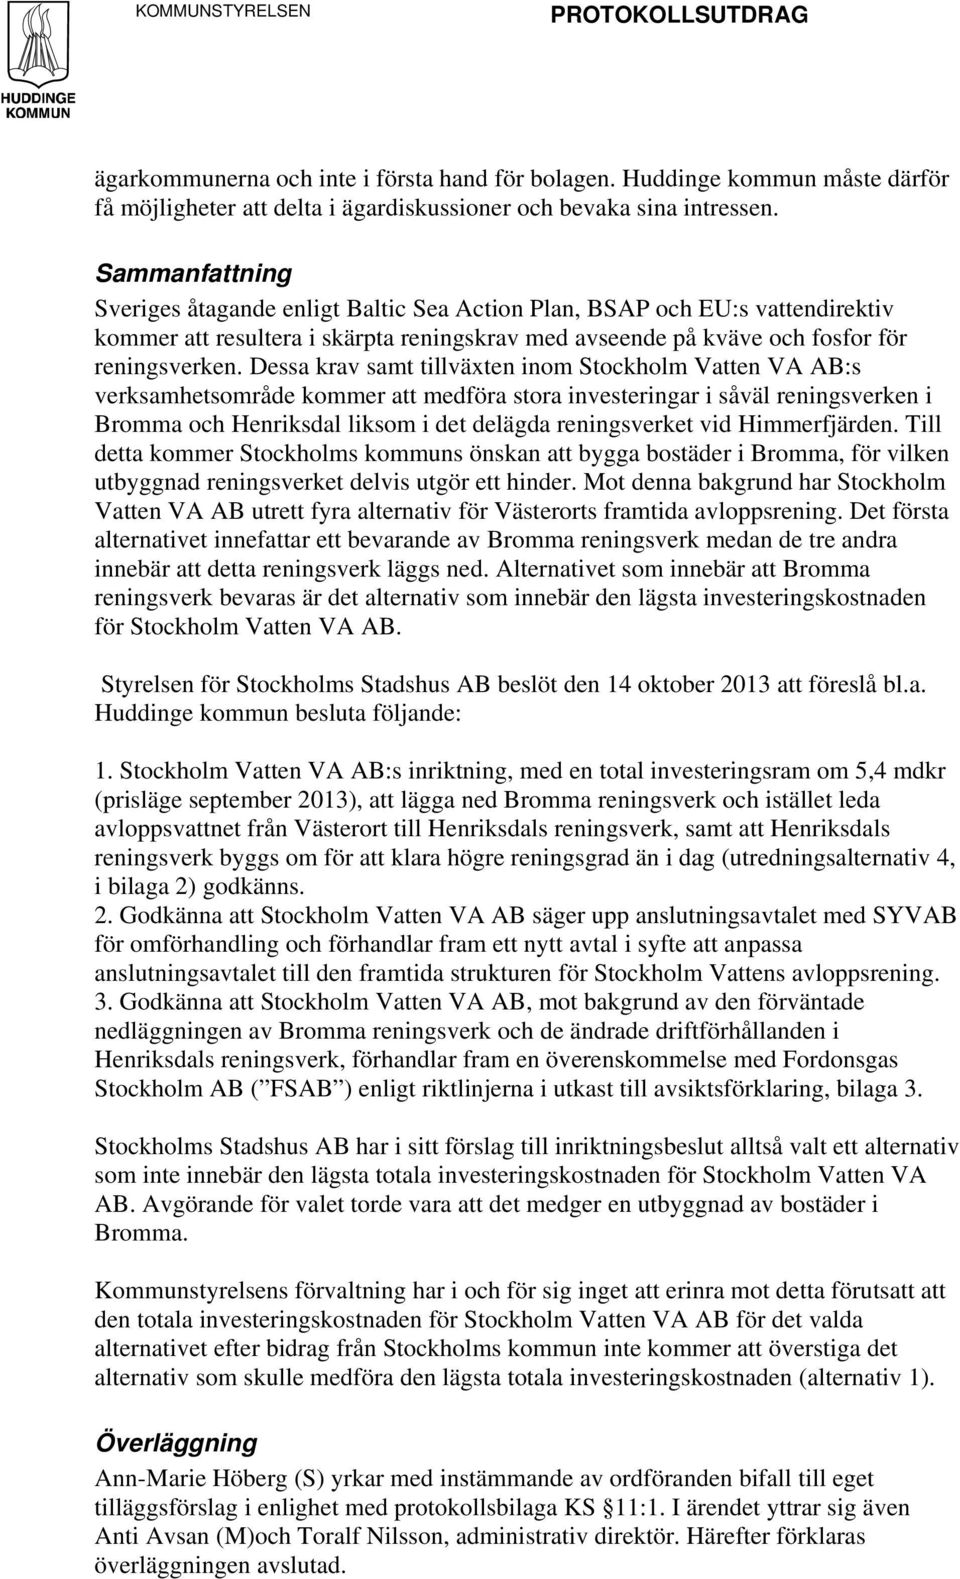 Dessa krav samt tillväxten inom Stockholm Vatten VA AB:s verksamhetsområde kommer att medföra stora investeringar i såväl reningsverken i Bromma och Henriksdal liksom i det delägda reningsverket vid